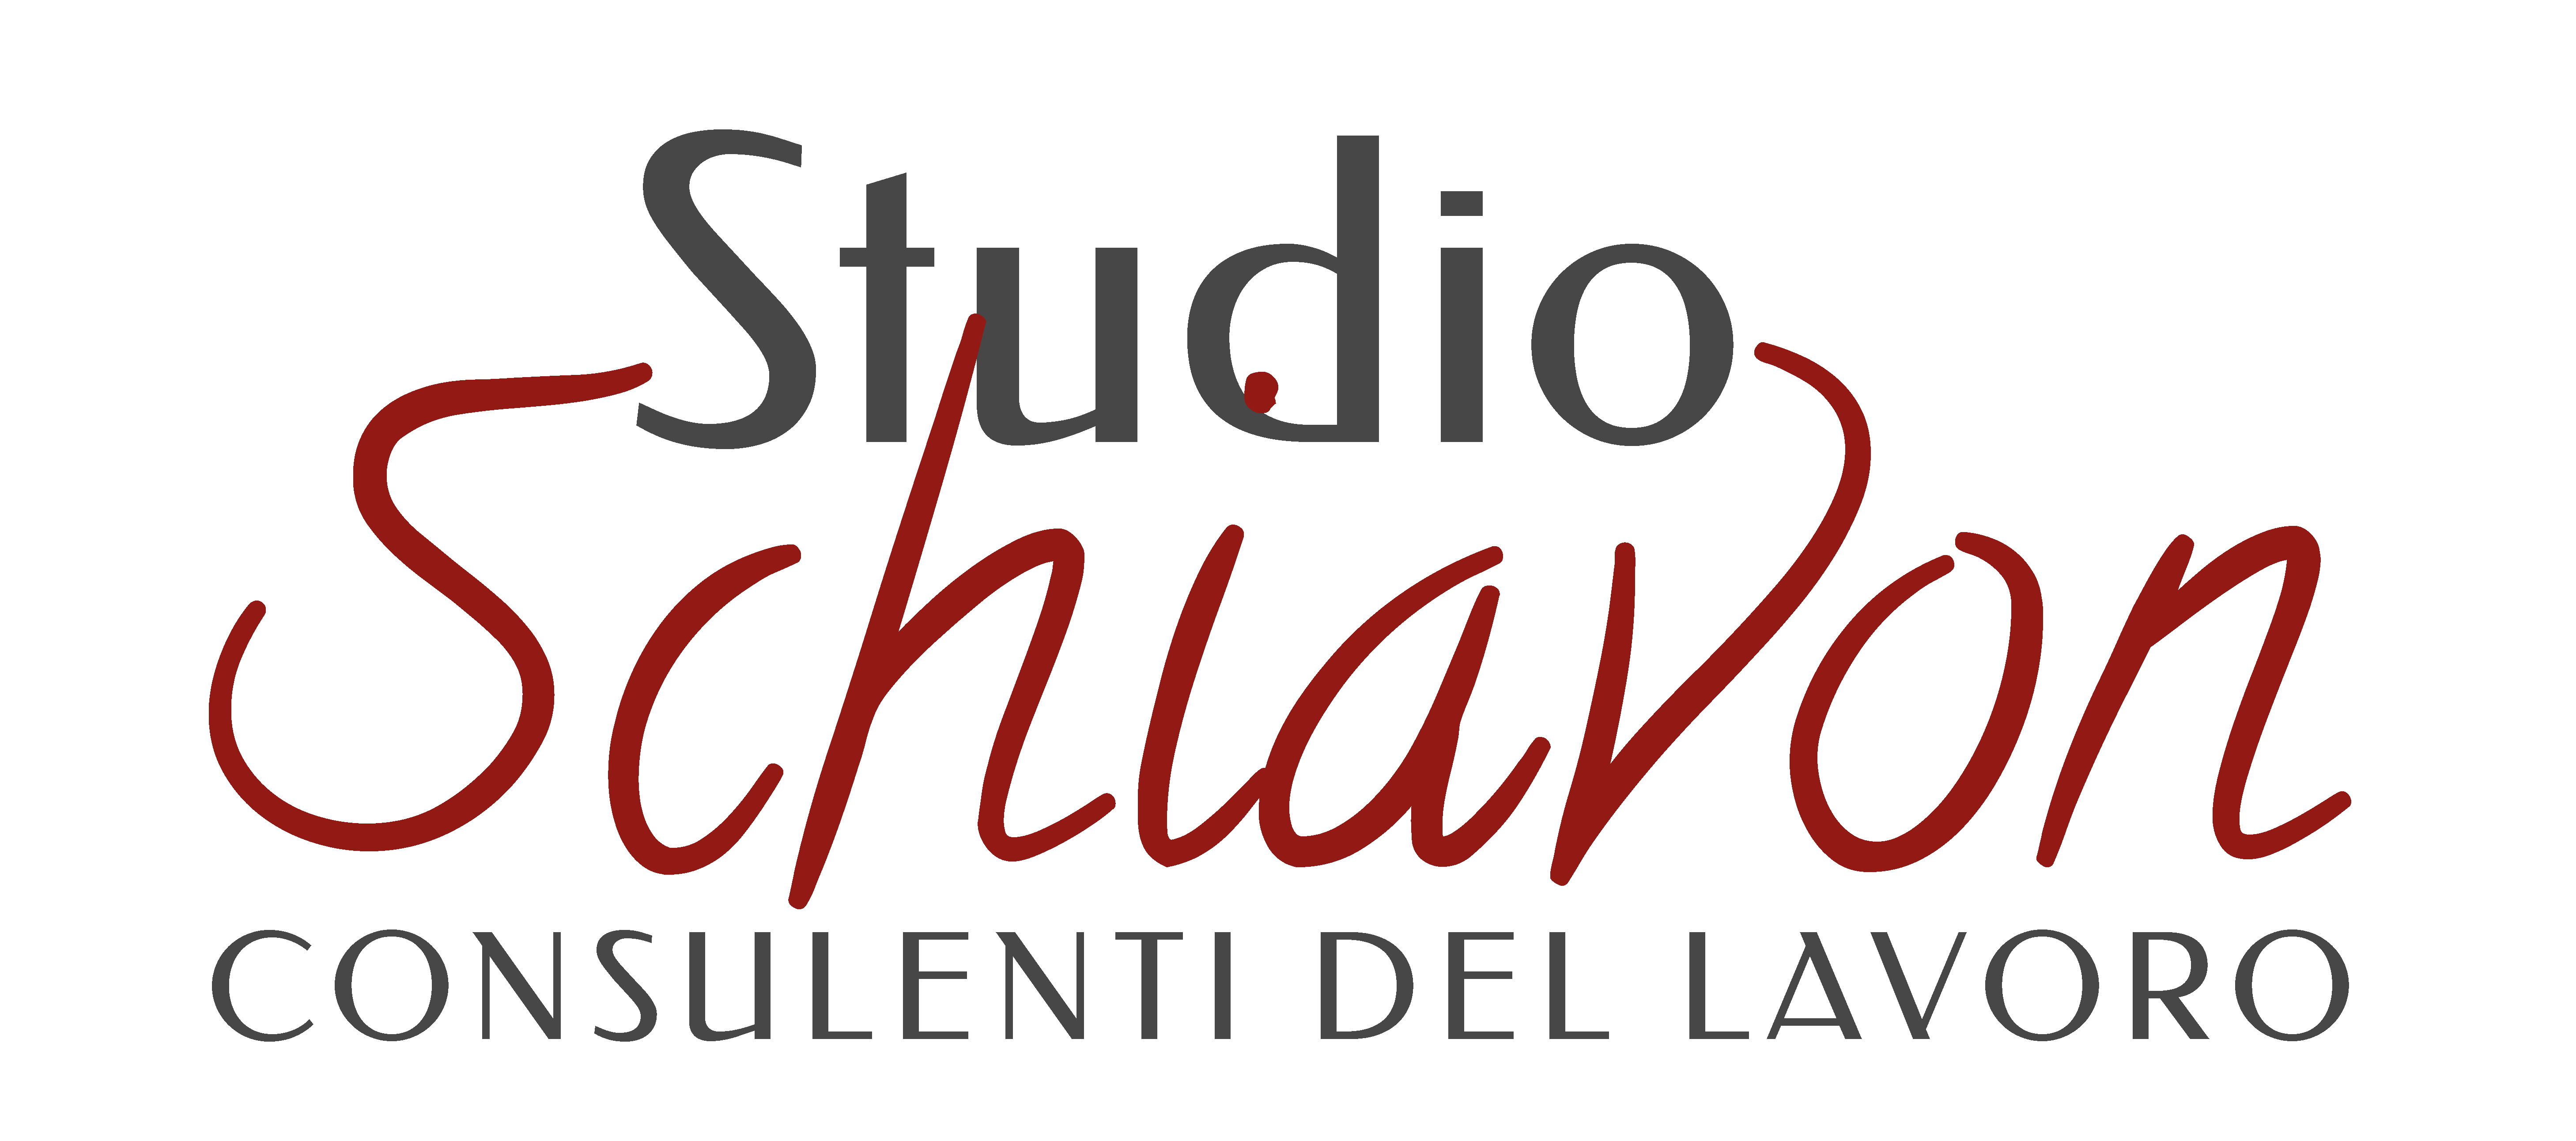 Studio Schiavon_logo